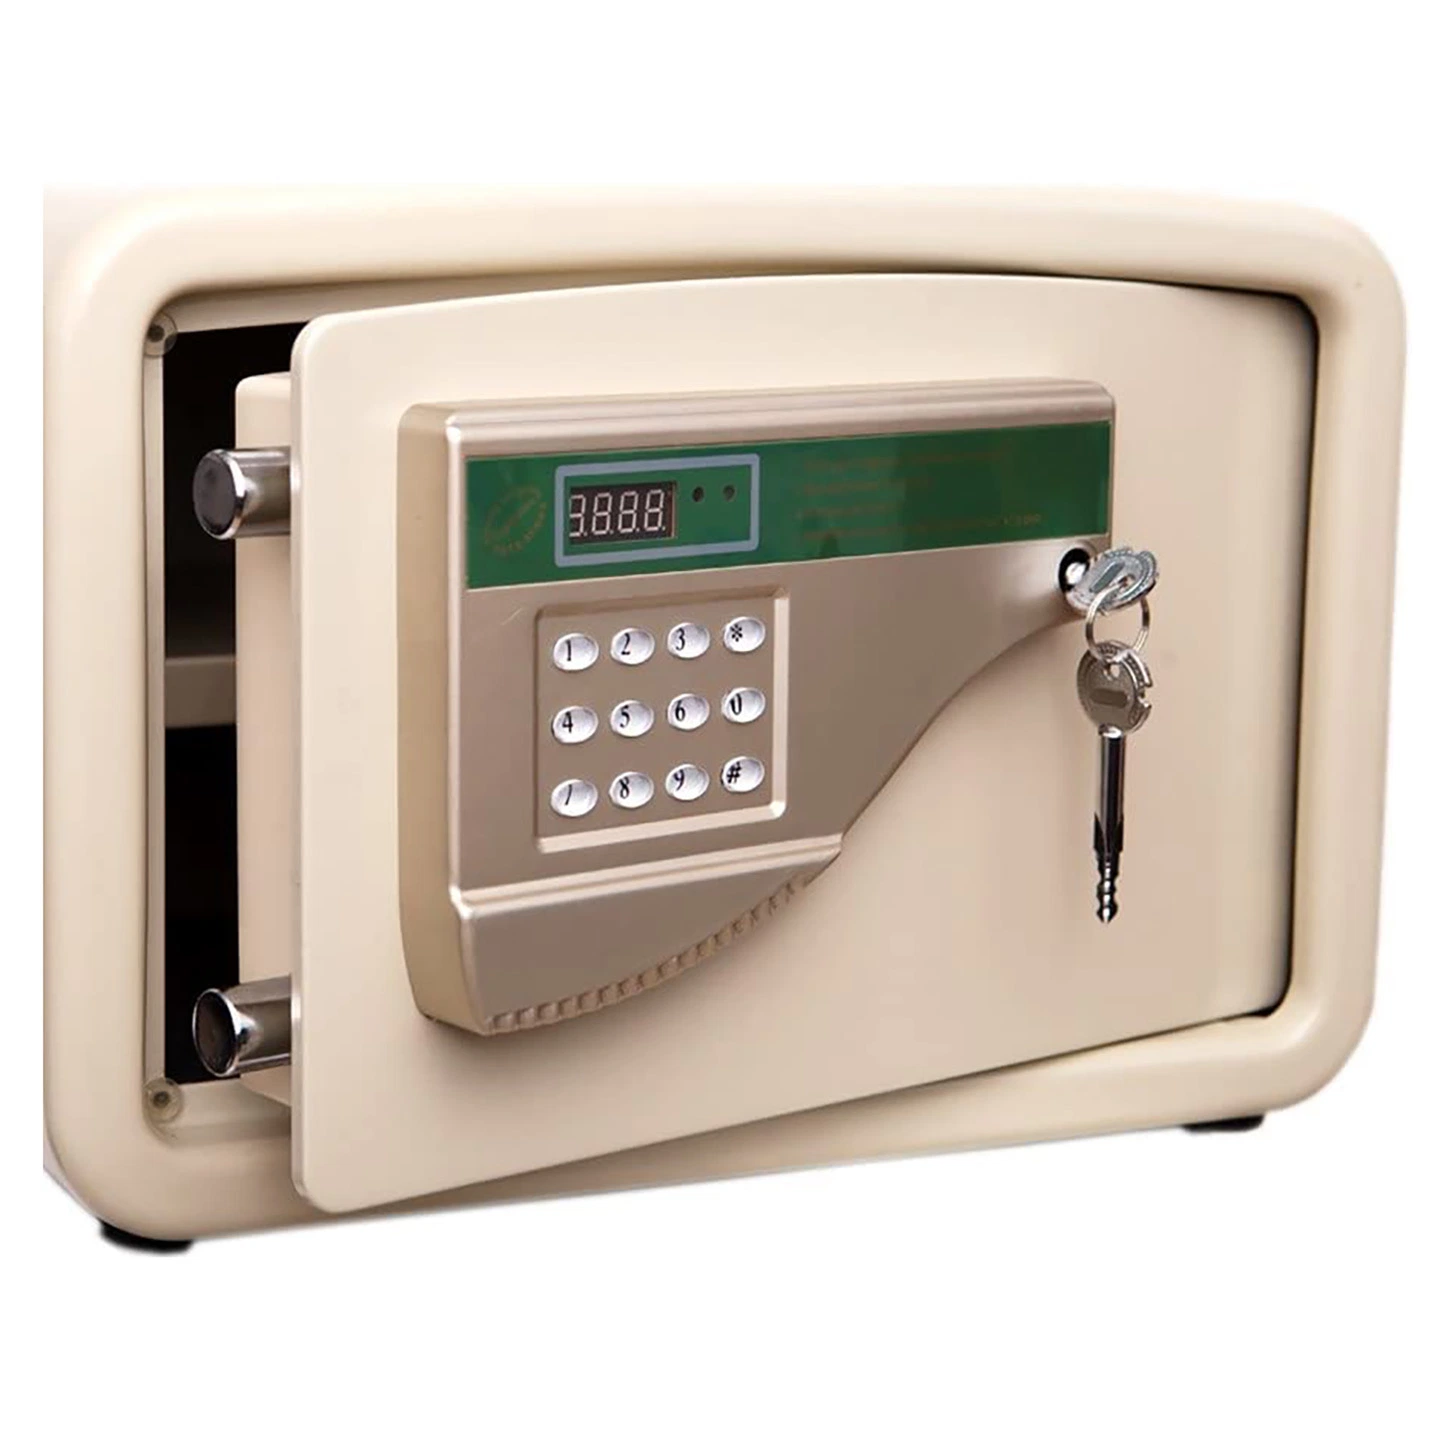 Comercio al por mayor de pequeño tamaño, caja fuerte de joyería electrónica de dinero en efectivo el uso de Cajas de seguridad